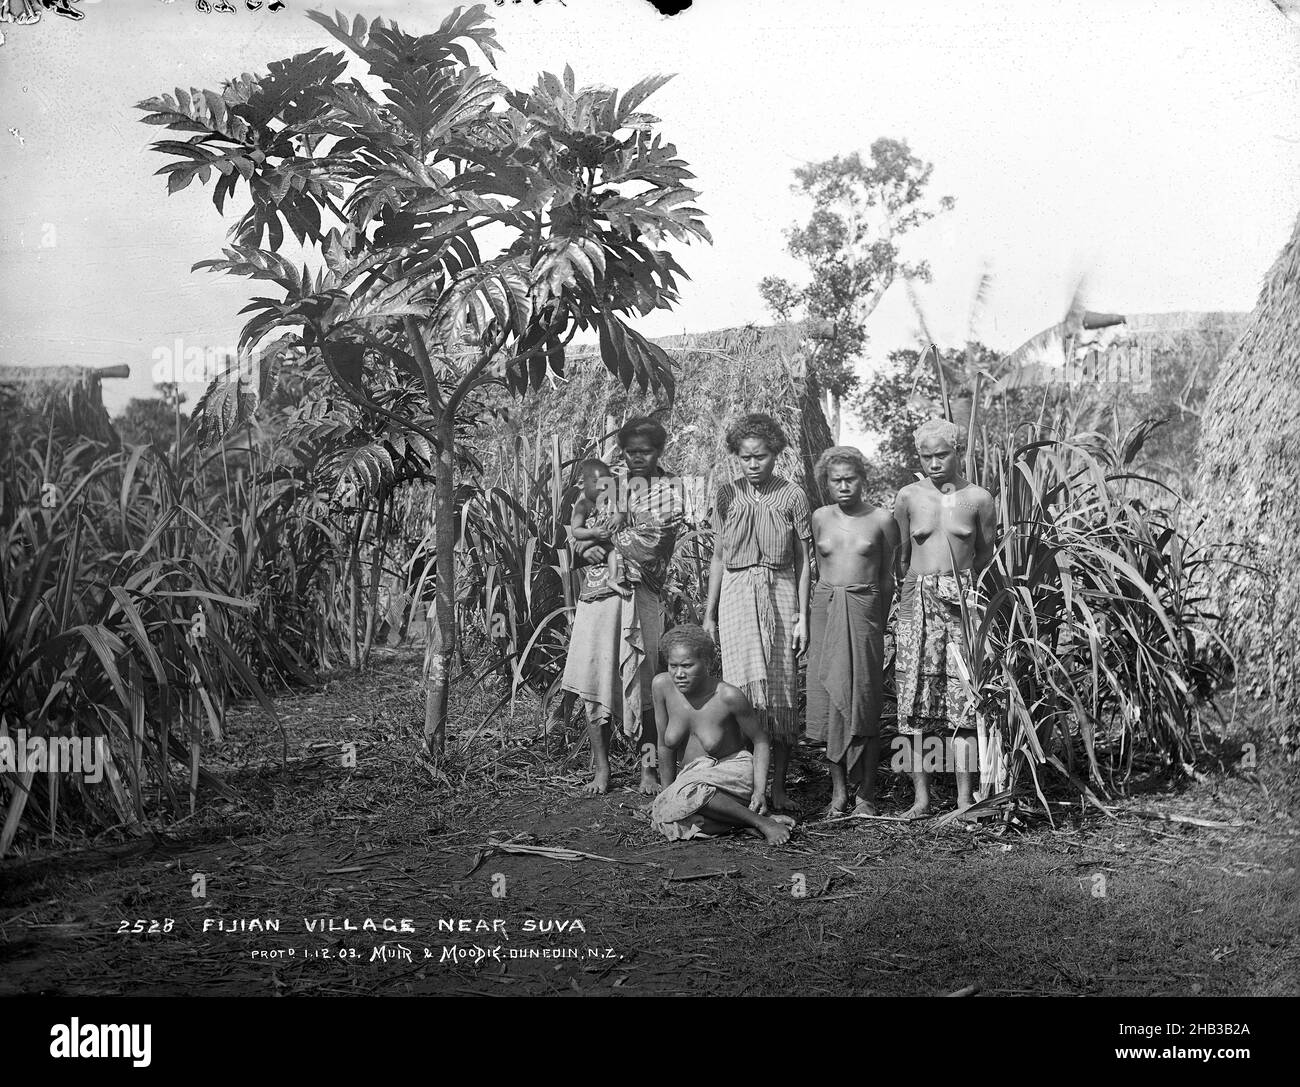 Fijian Village vicino Suva, studio Burton Brothers, studio fotografico, 12 luglio 1884, Nuova Zelanda, Fotografia in bianco e nero, una donna seduta di fronte a quattro donne in standiing, una con il bambino nelle sue braccia. Un piccolo albero di breadfruit sta ombreggiando la donna con il bambino, dietro c'è un boschetto di piante di zucchero e tre bure Foto Stock